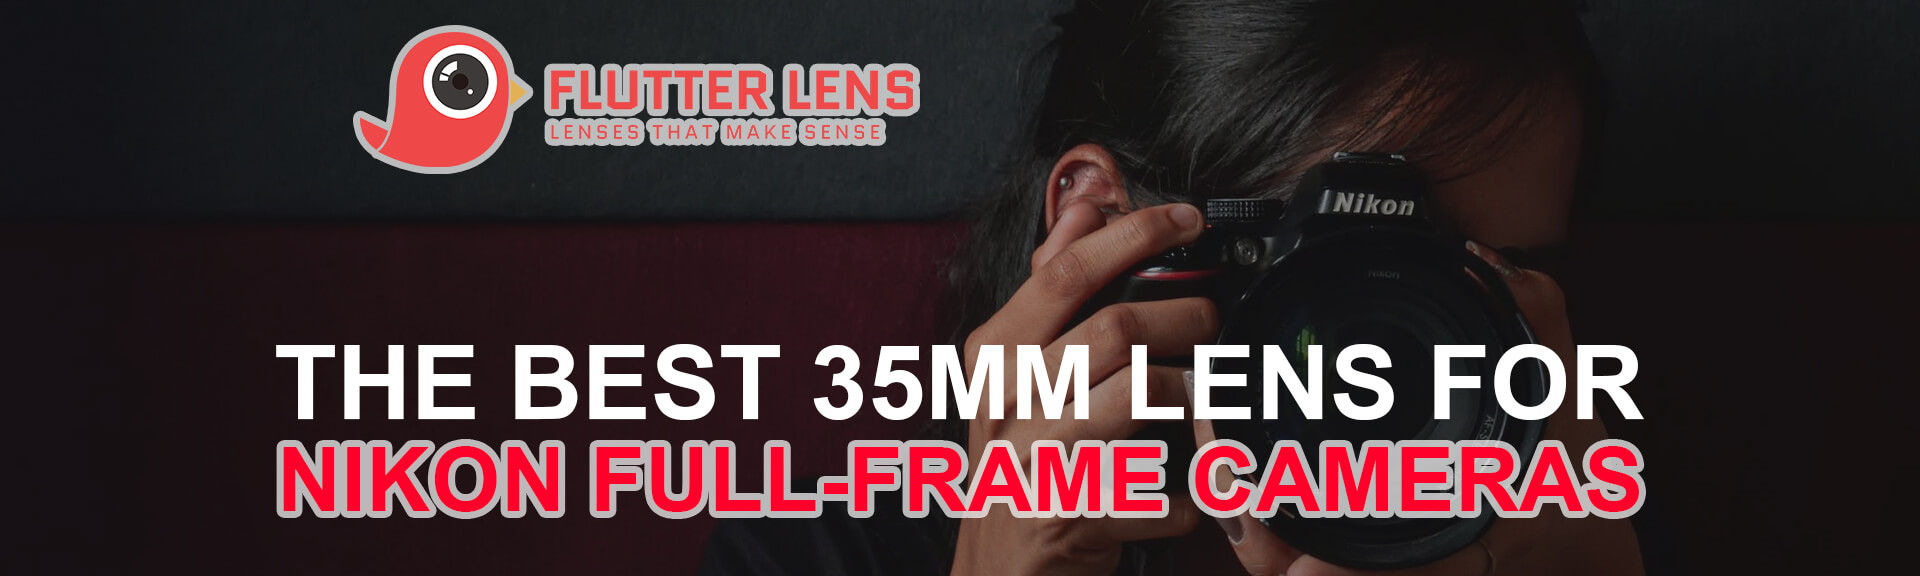 5 Of The Best 35mm Lens For Nikon Full-Frame Cameras